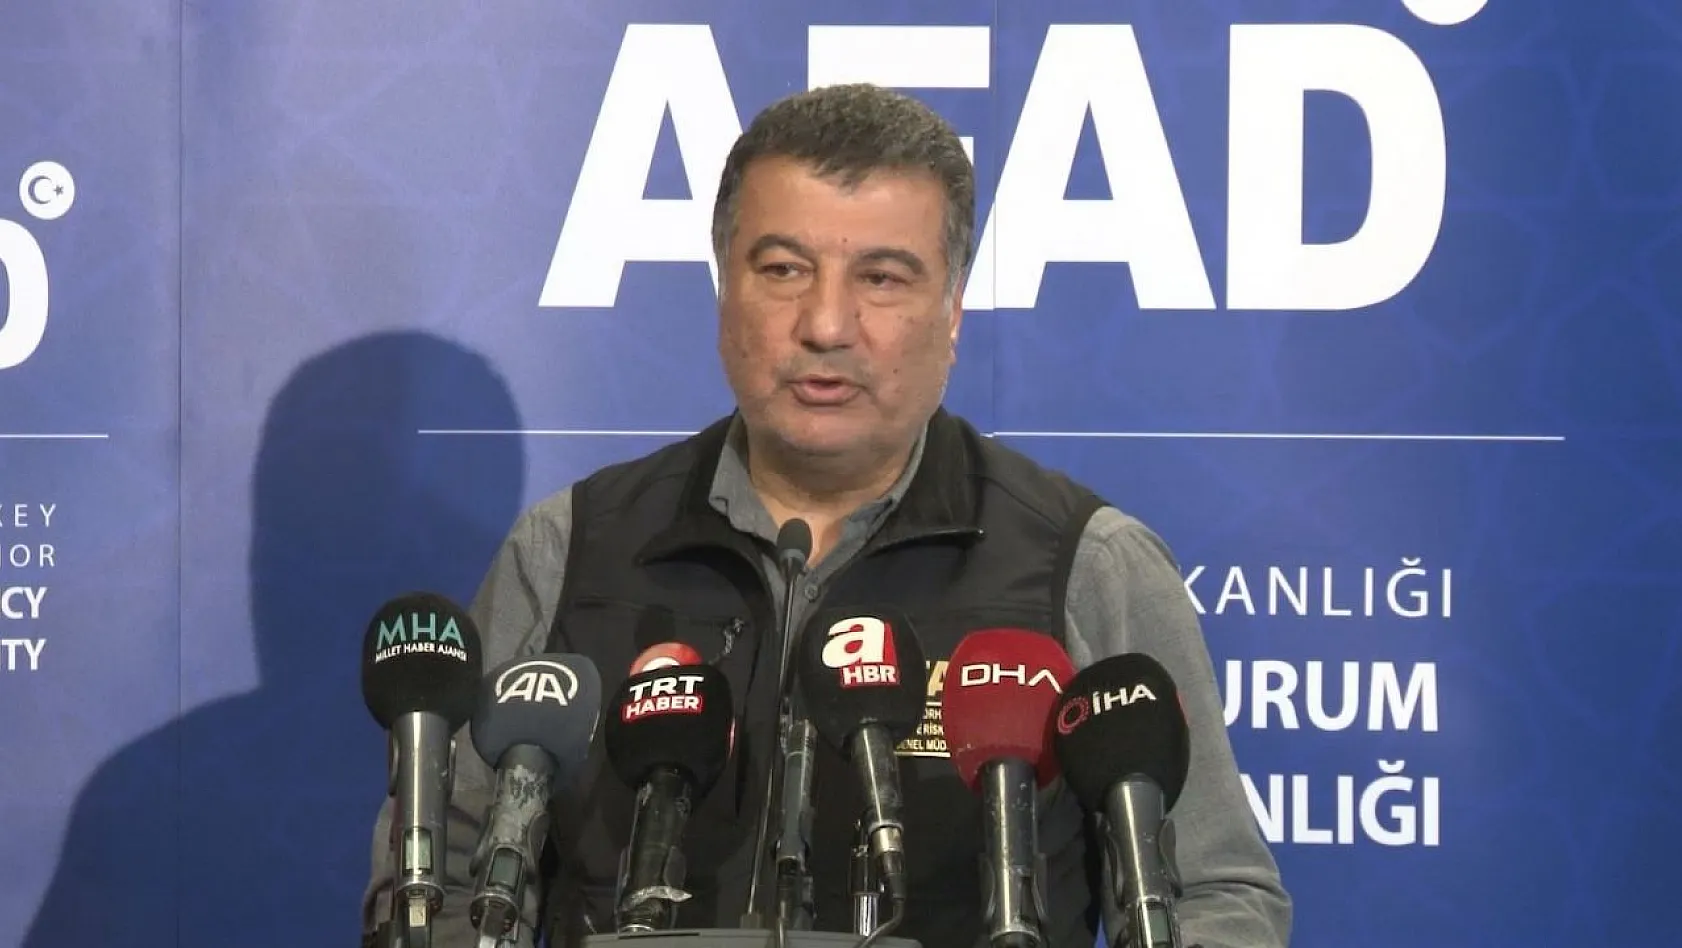 AFAD: Kayseri'nin bazı ilçelerinde hasarlı binaların olduğuna dair bilgiler var